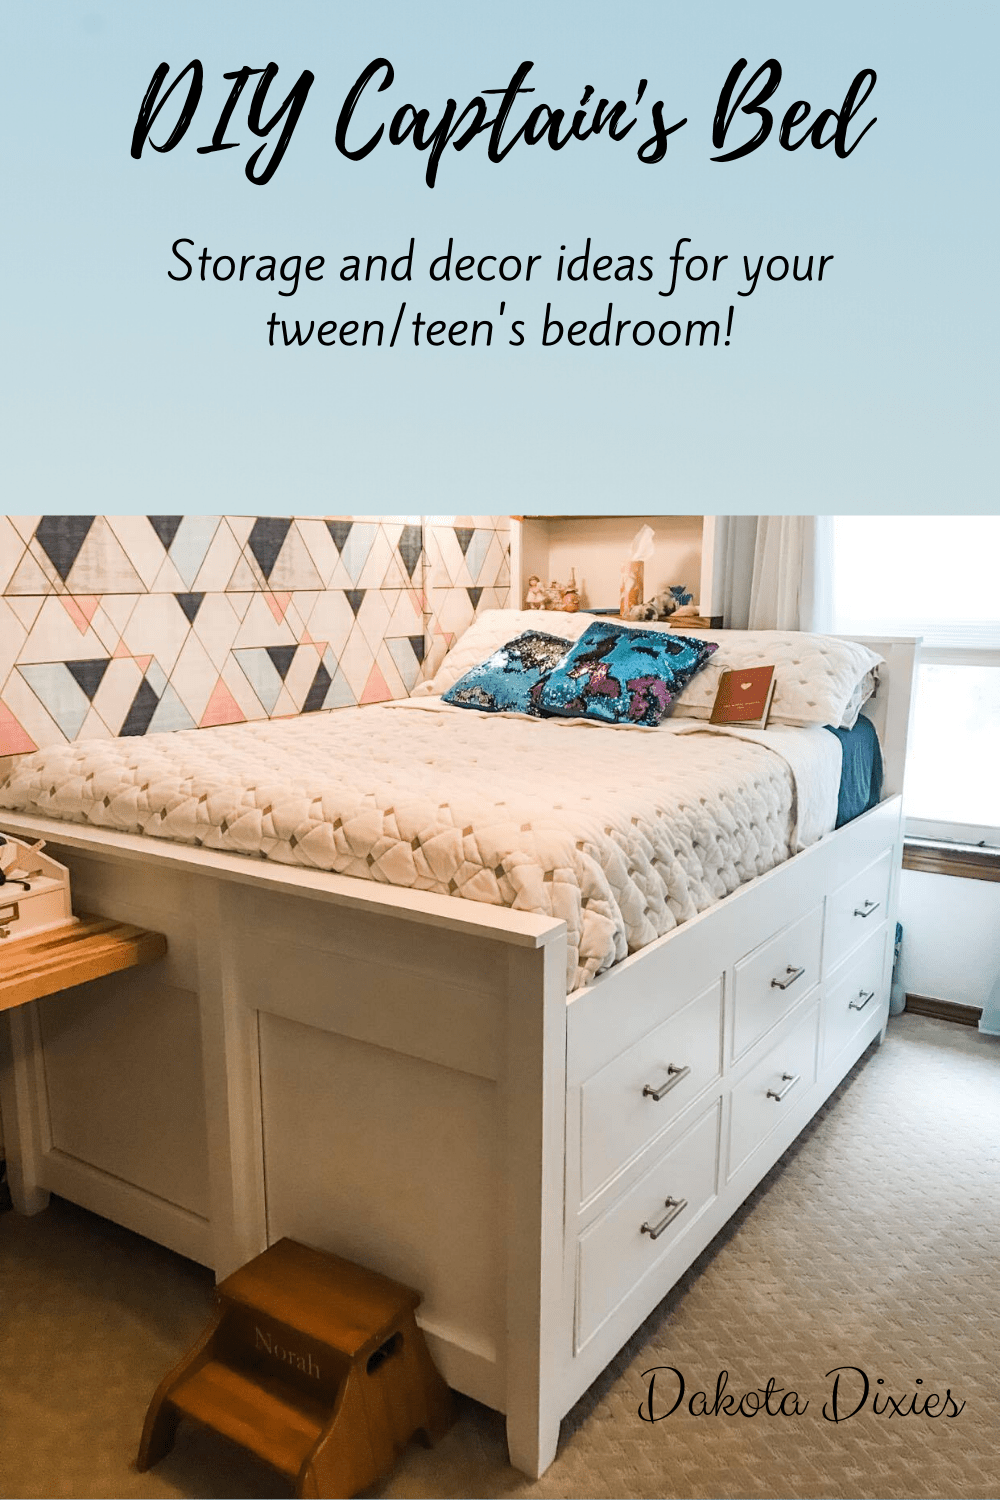 Bed Dakota Dixies Teen Bedroom Ideas, Diy Twin Captains Bed